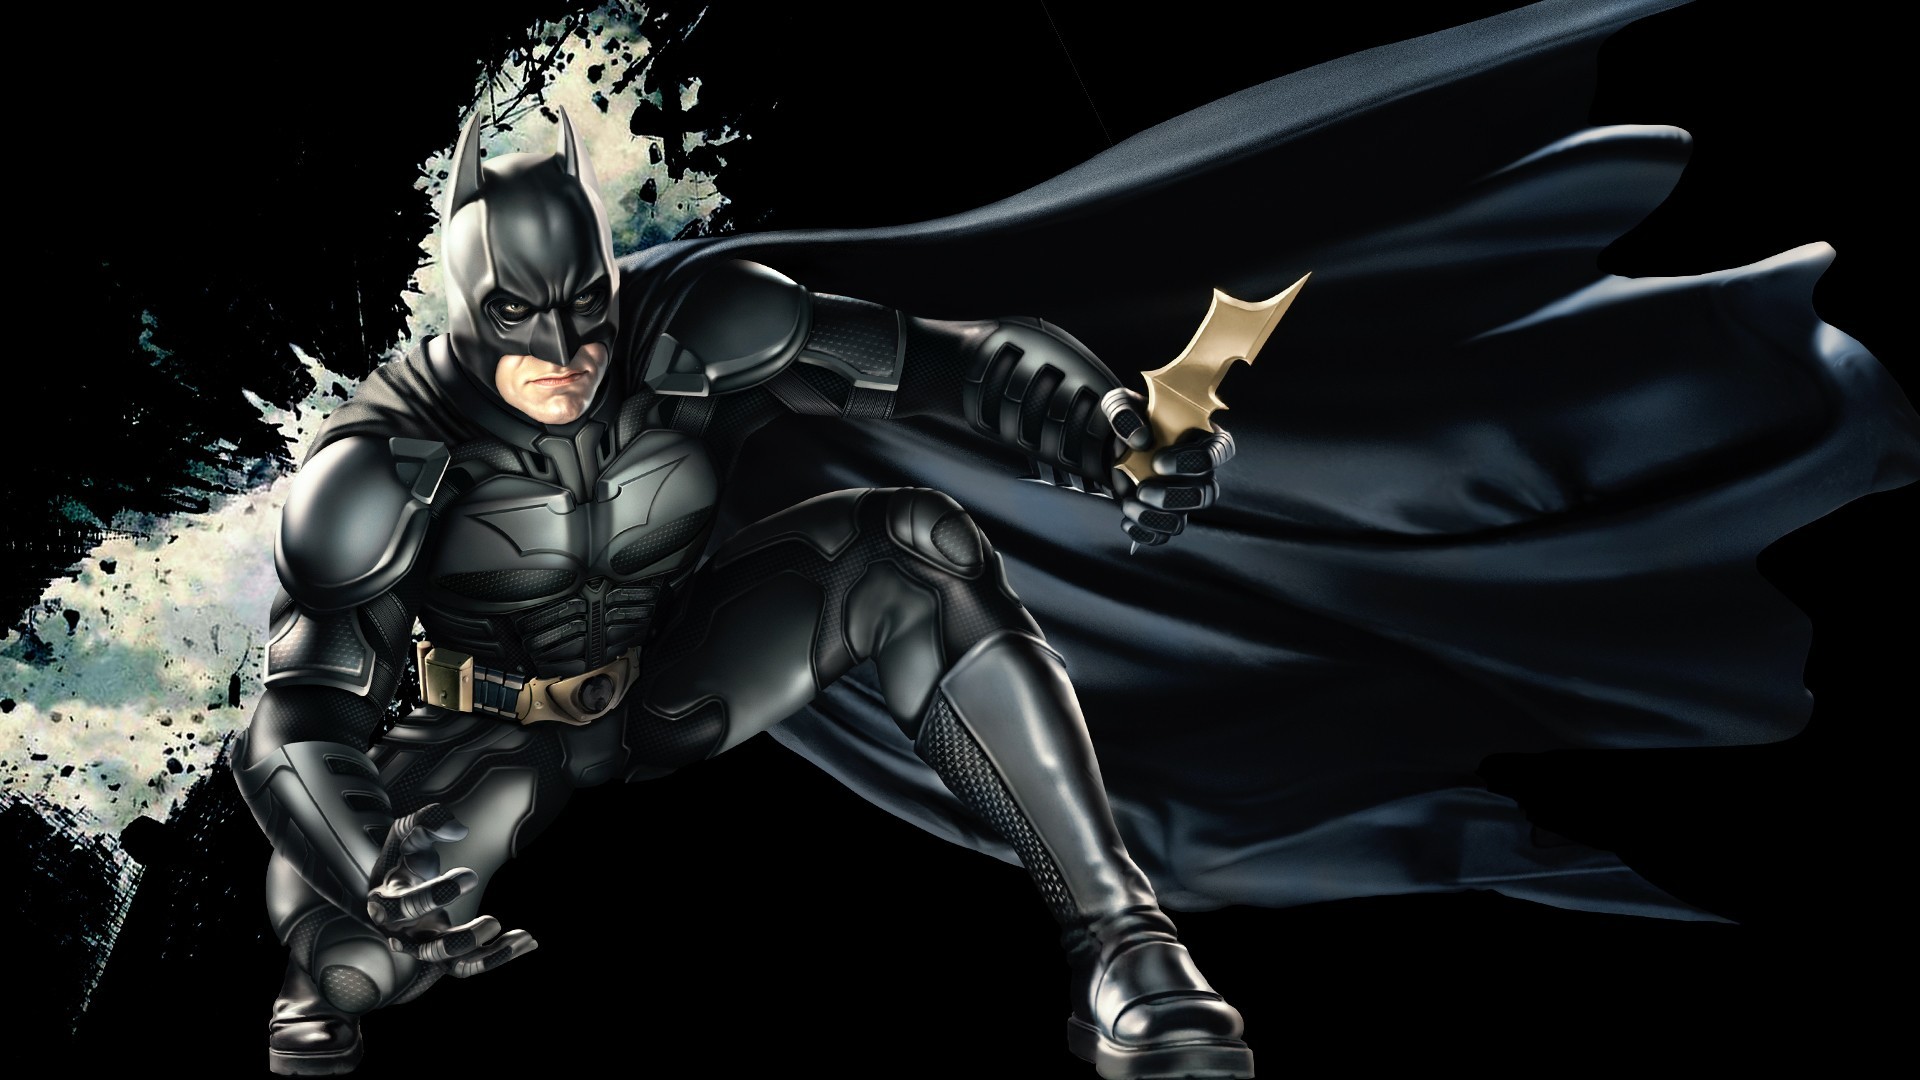 Dark Knight Batman Wallpaper Hd - HD Wallpaper 